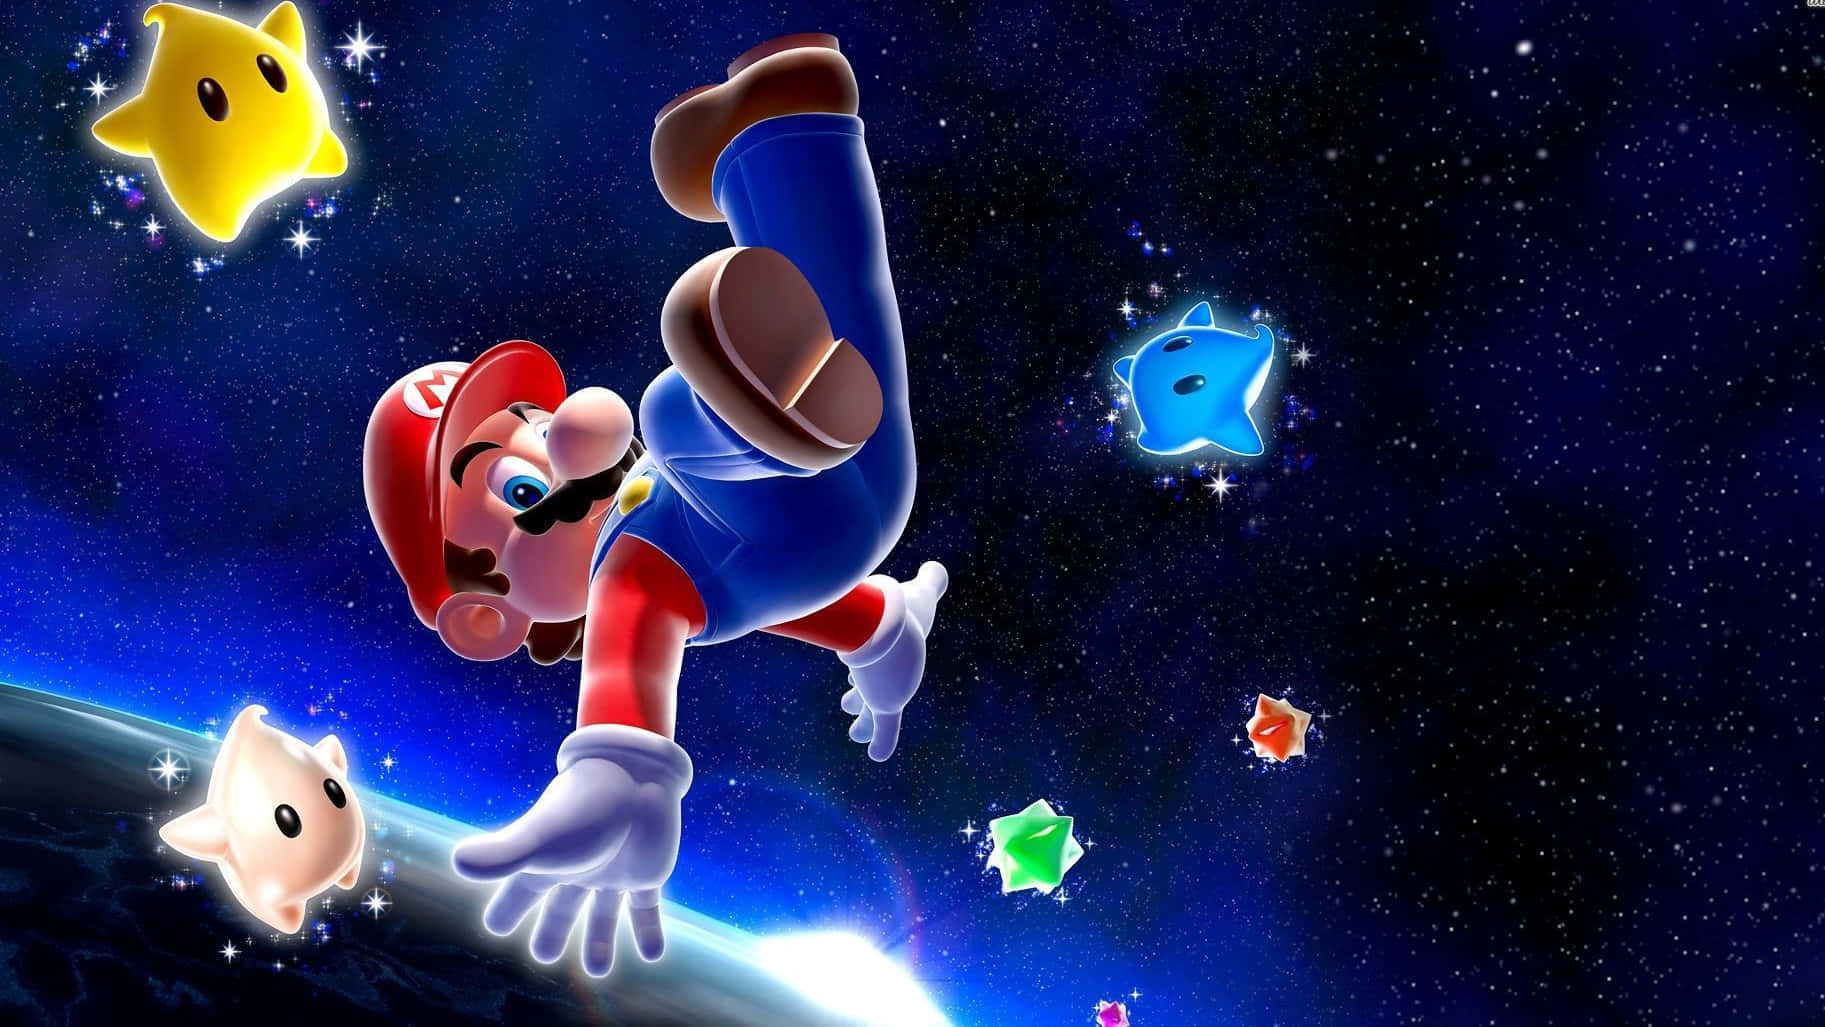 Följmed Mario På En Pixelerad Resa Genom Rymden! Wallpaper